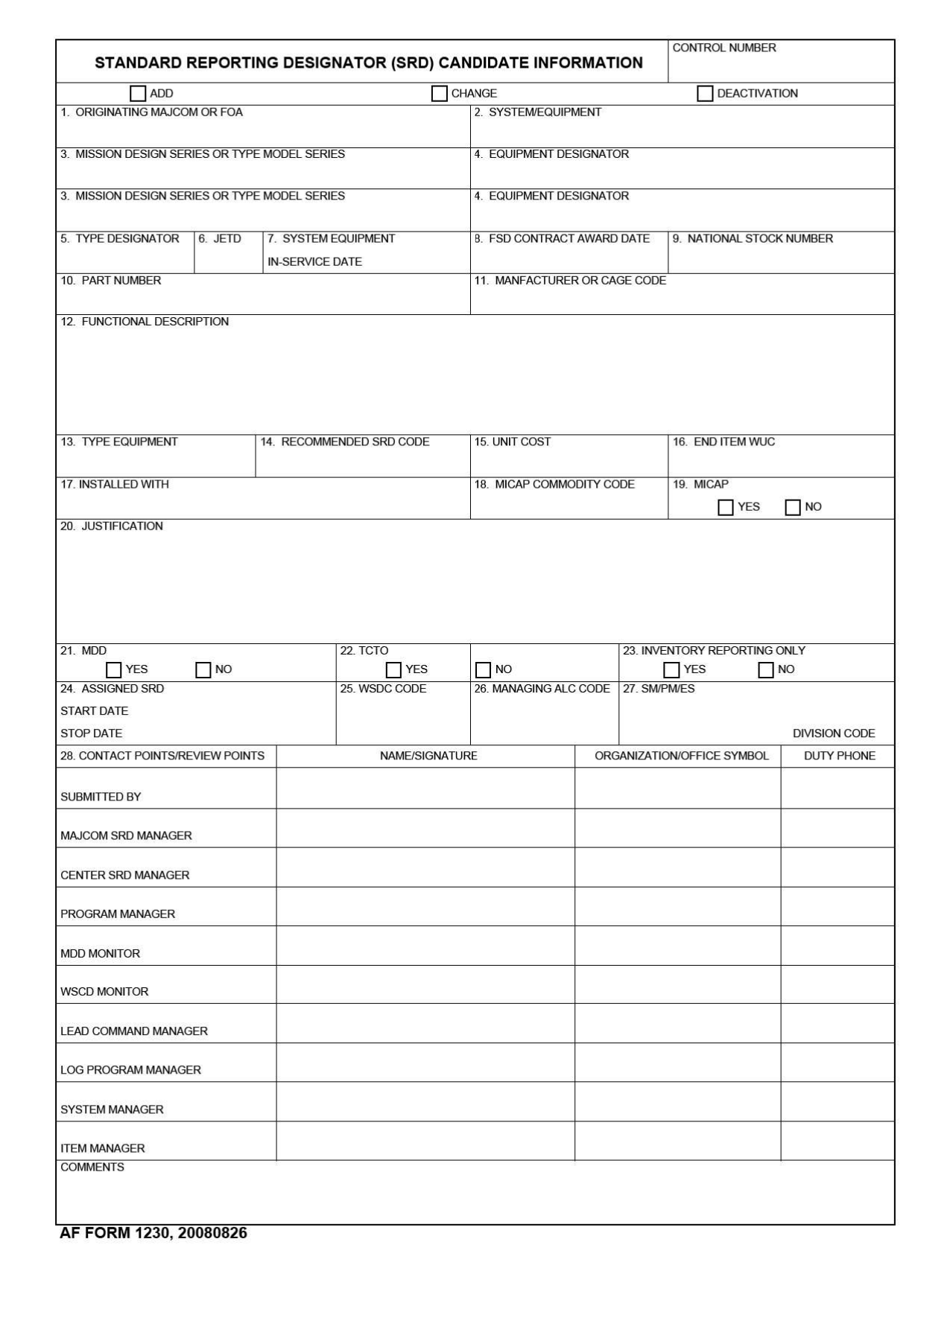 AF Form 1230 Standard Reporting Designator (Srd) Candidate Information, Page 1